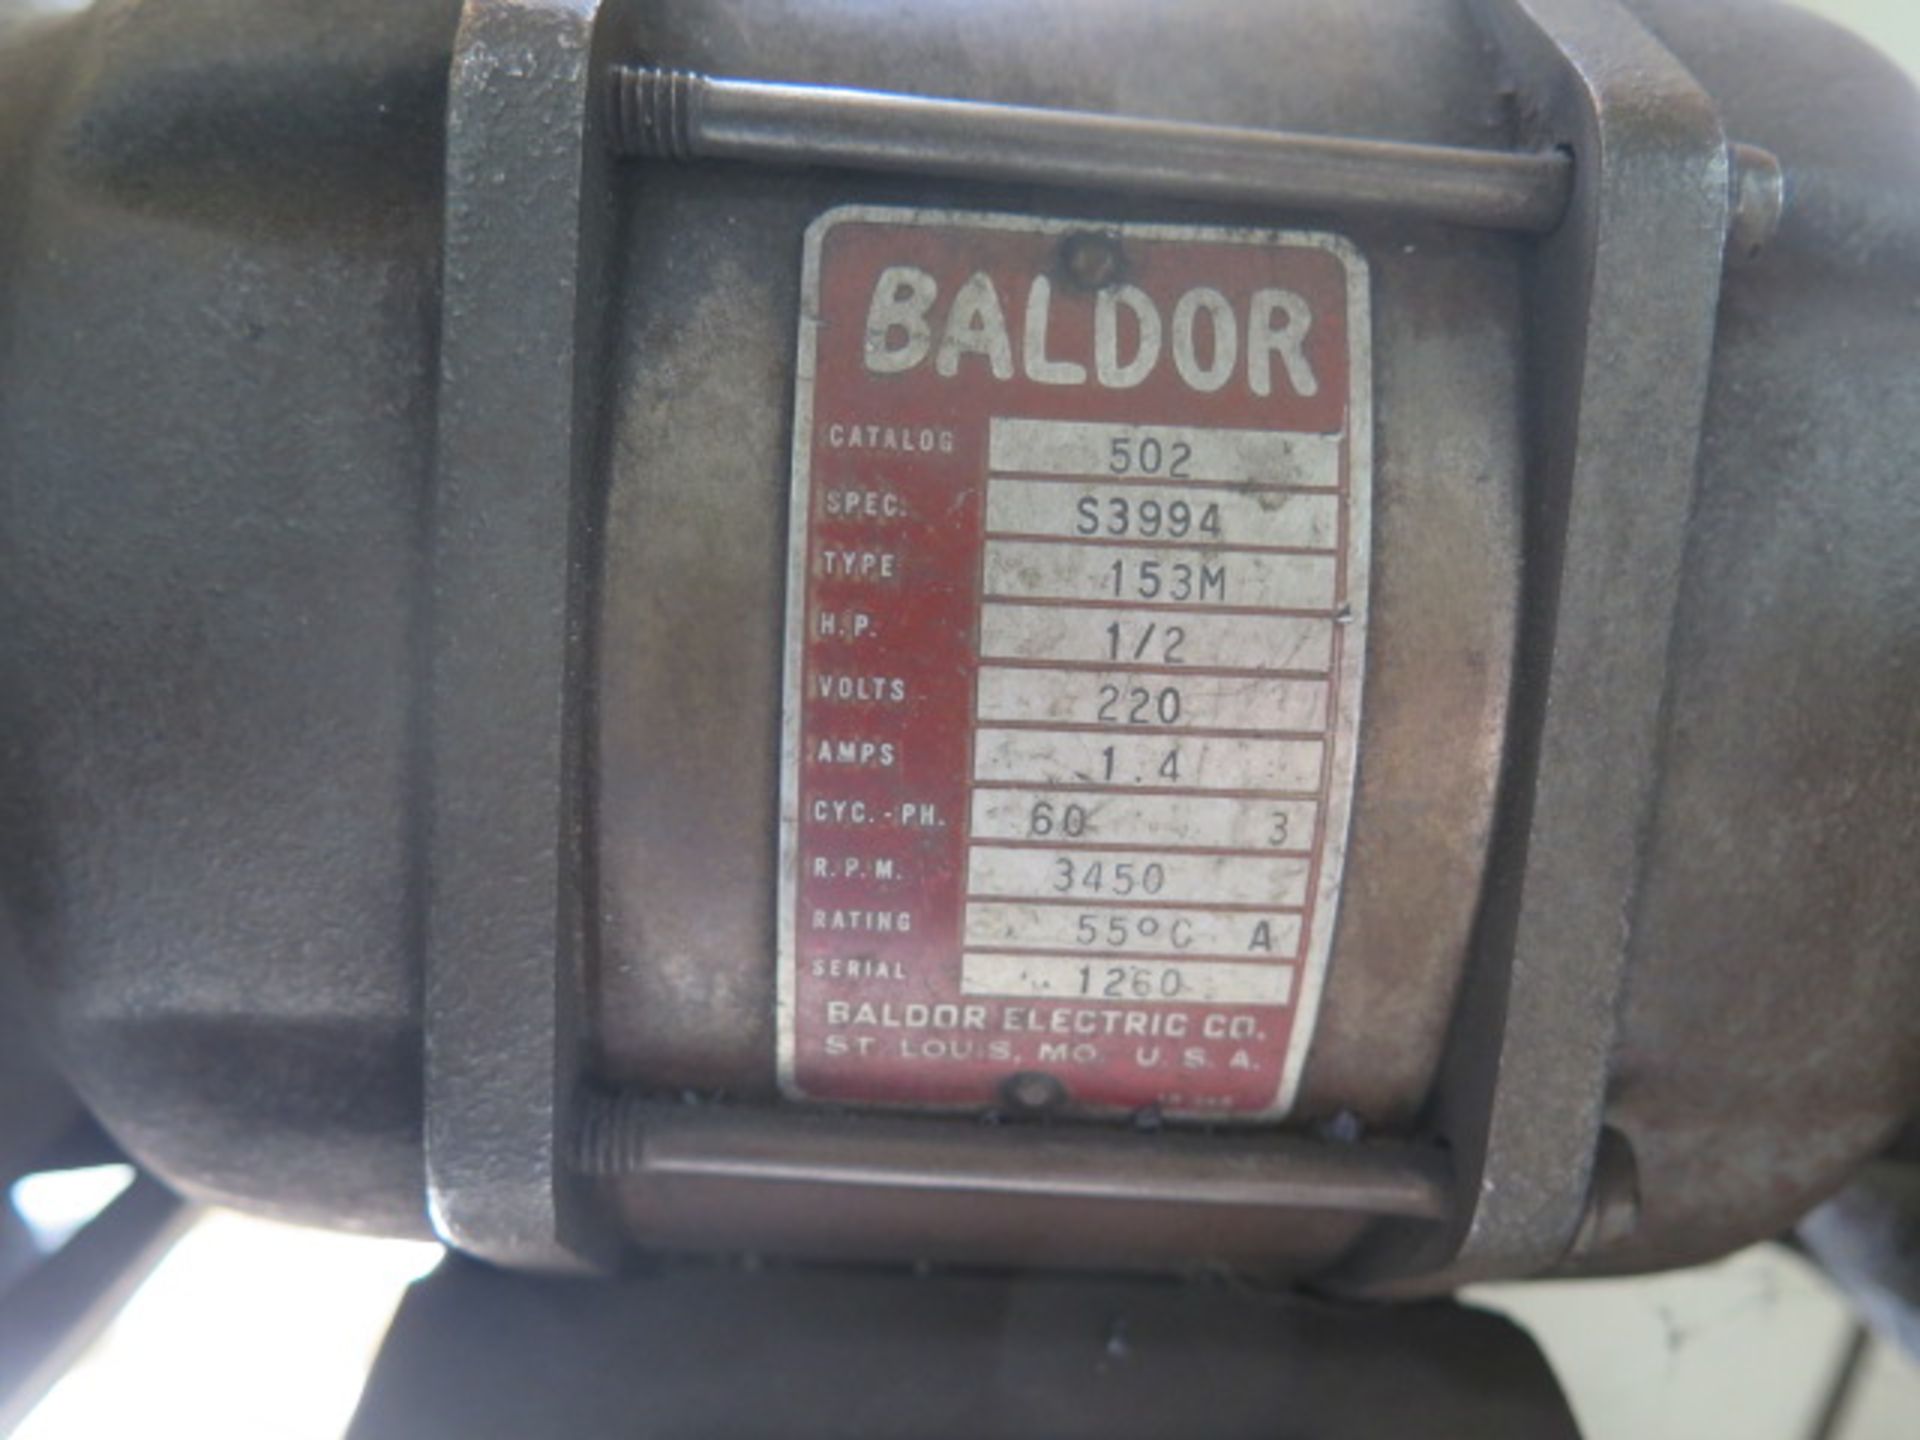 Baldor Pedestal Carbide Tool Grinder - Image 3 of 3